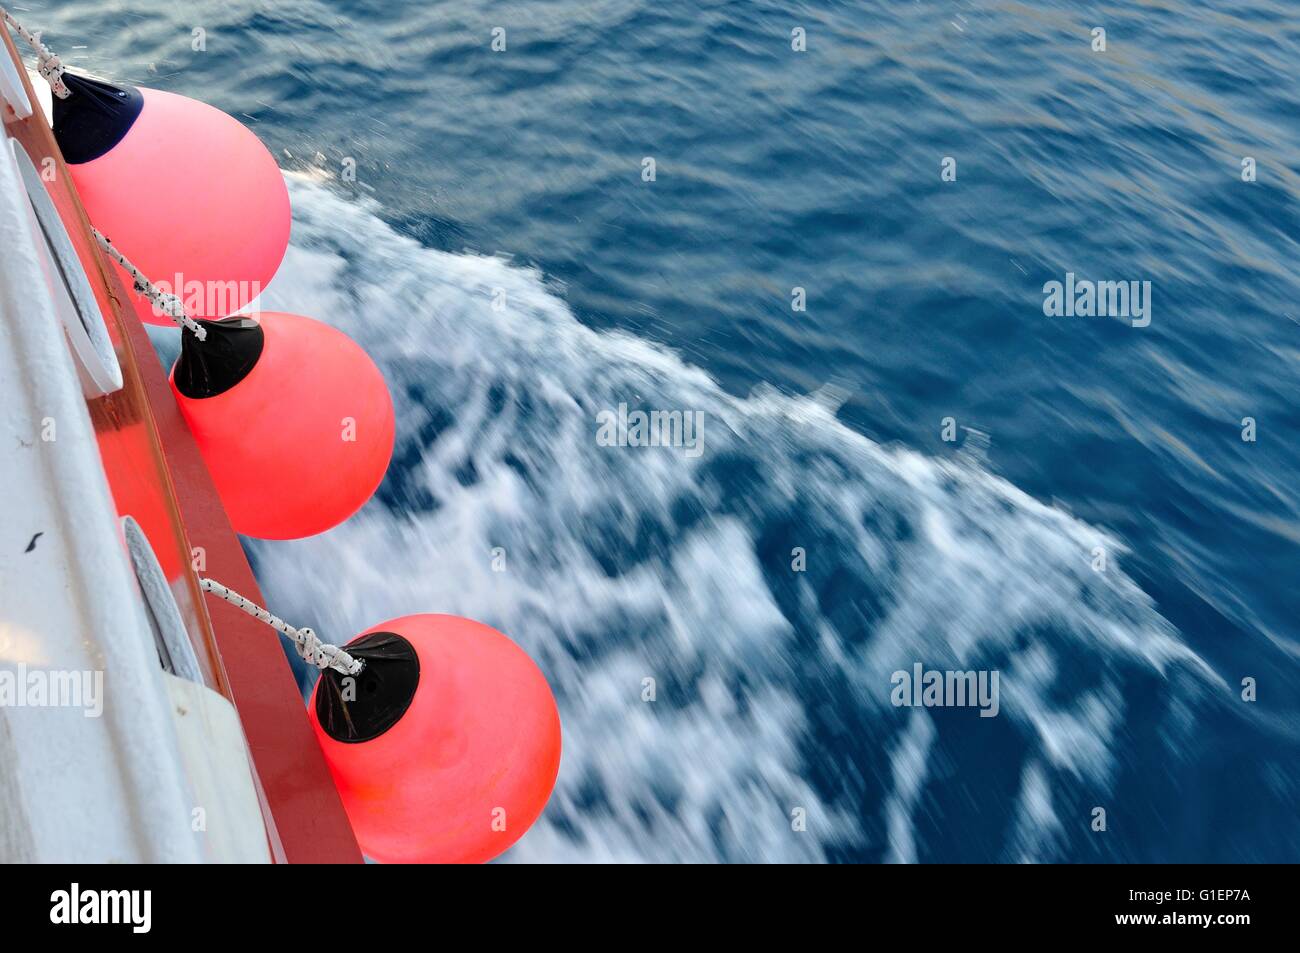 Rote Boje auf Körper Schiff zu bewegen. Winken Adria im rechten Teil des Bildes. Horizontales Bild. Stockfoto